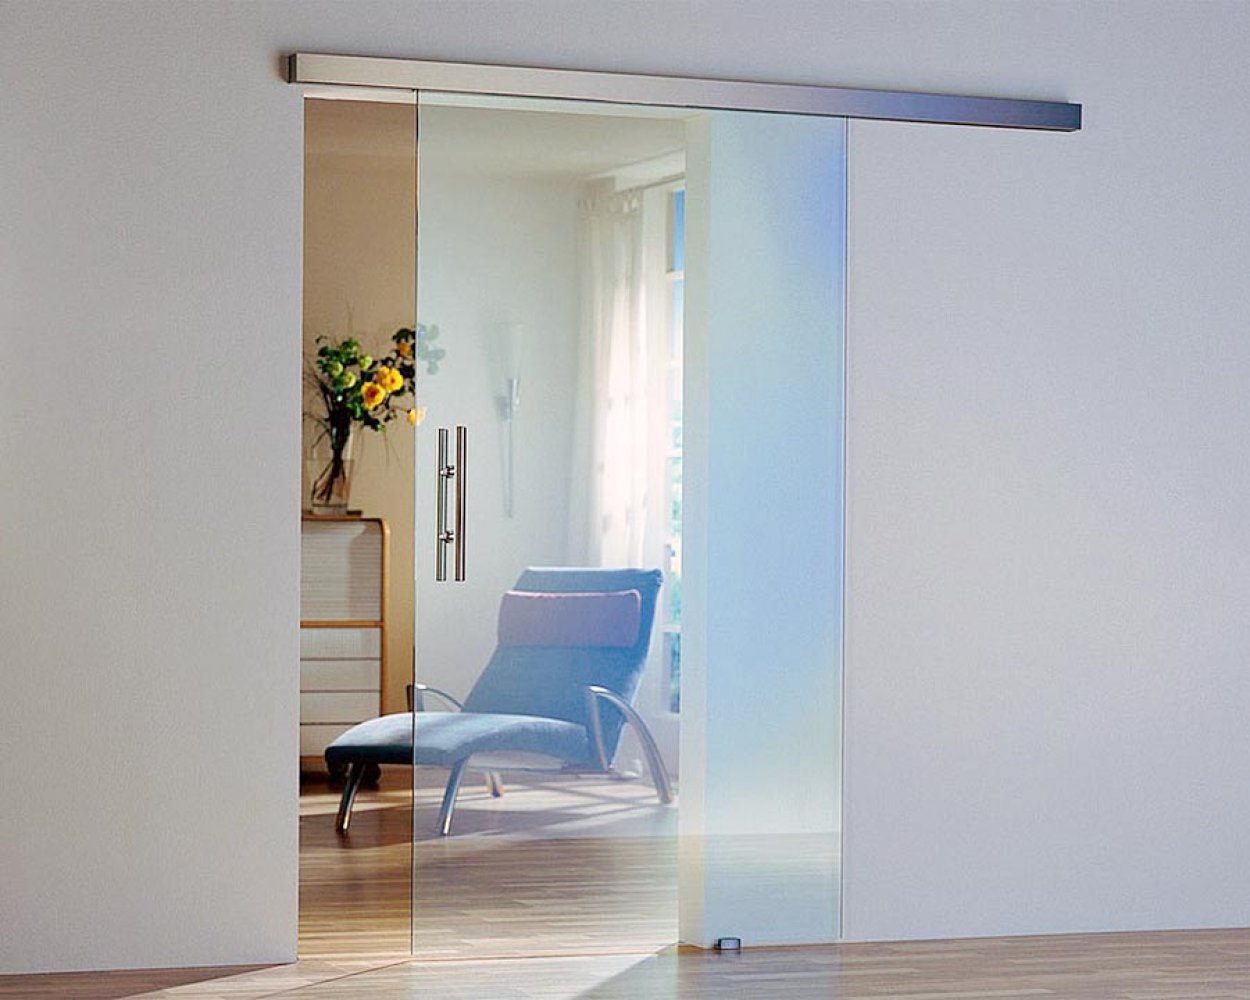 Стеклянная дверь в квартире. Dorma Agile 150. W-001/Air Glass. Раздвижная система цельностеклянная. Раздвижные перегородки estet.